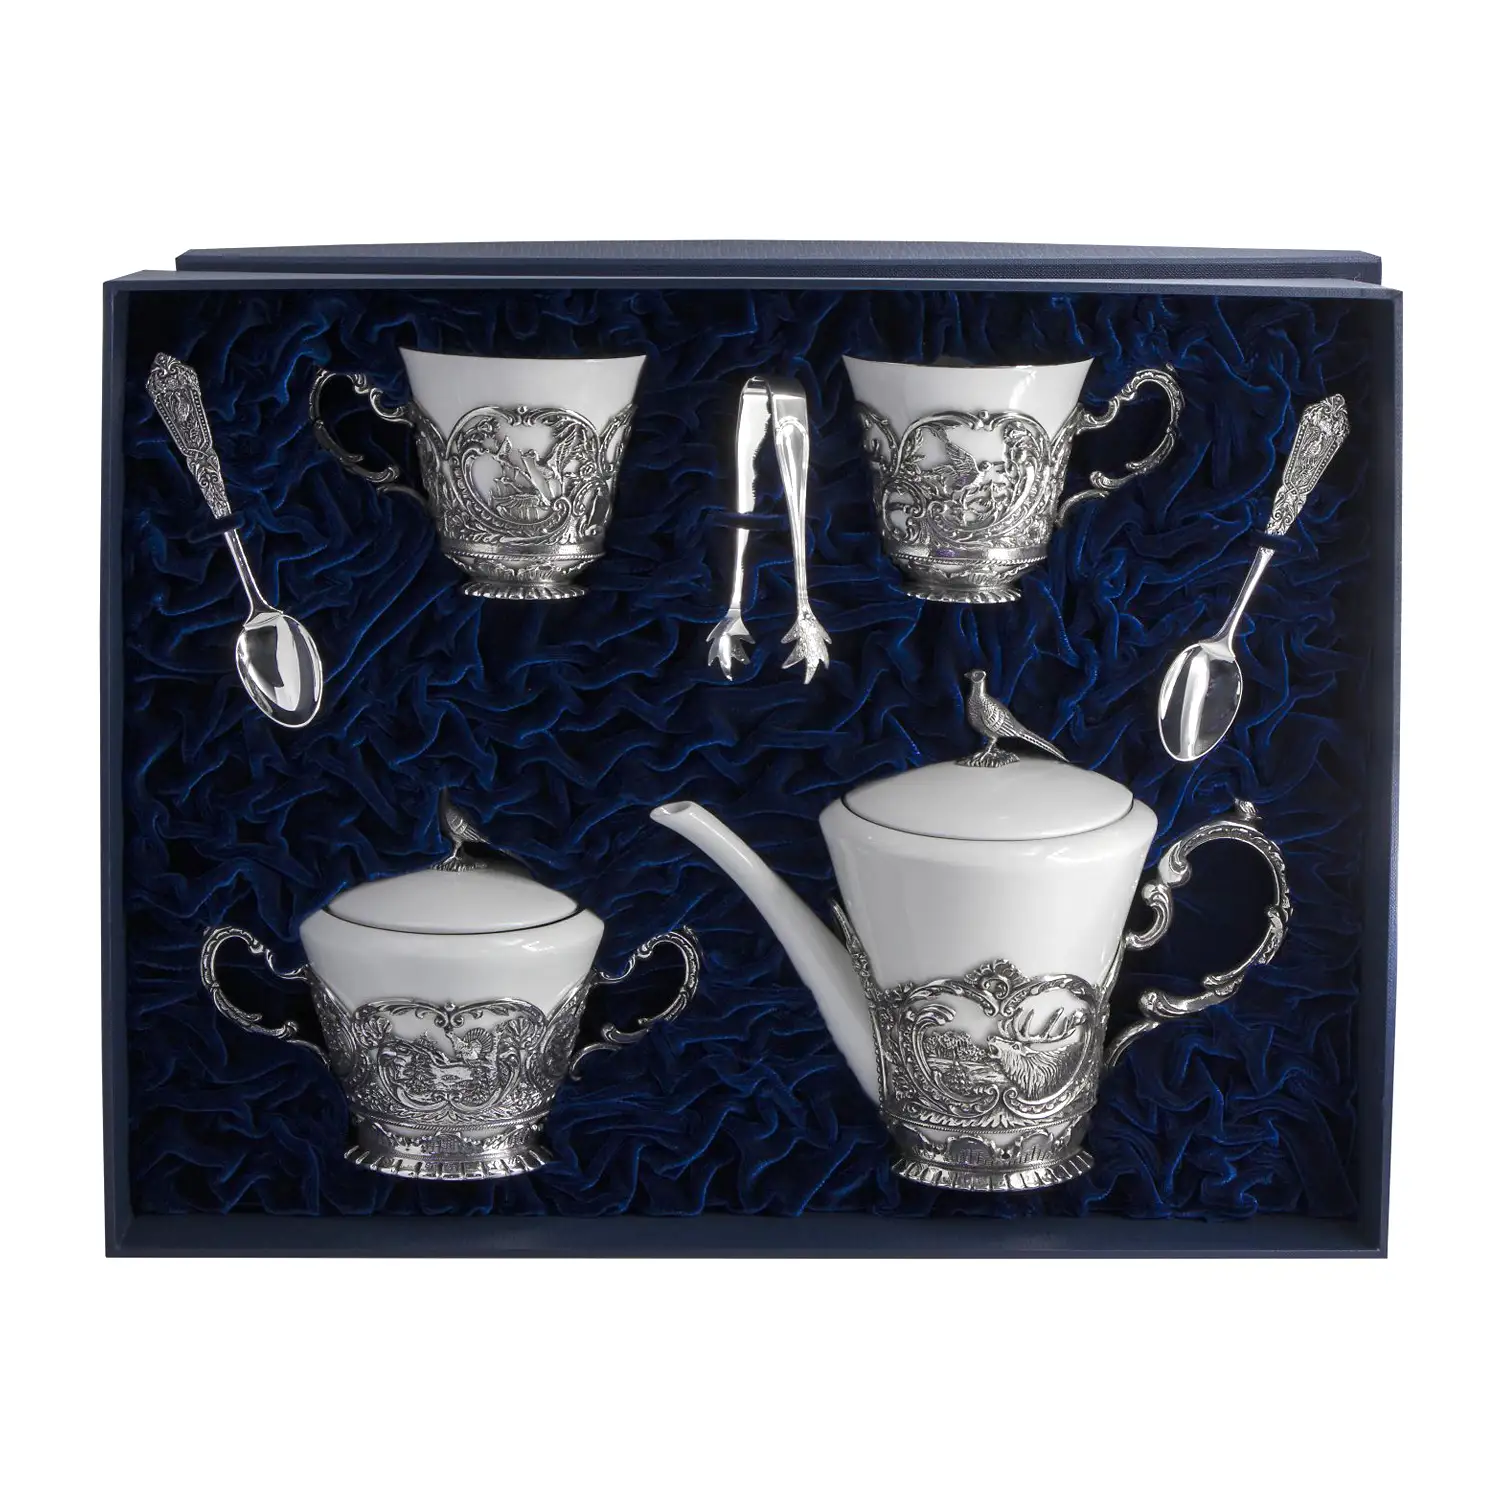 Набор Королевская охота: ложка, чашка, чайник, сахарница (Серебро 925) набор королевская охота ложка чашка сахарница серебро 925